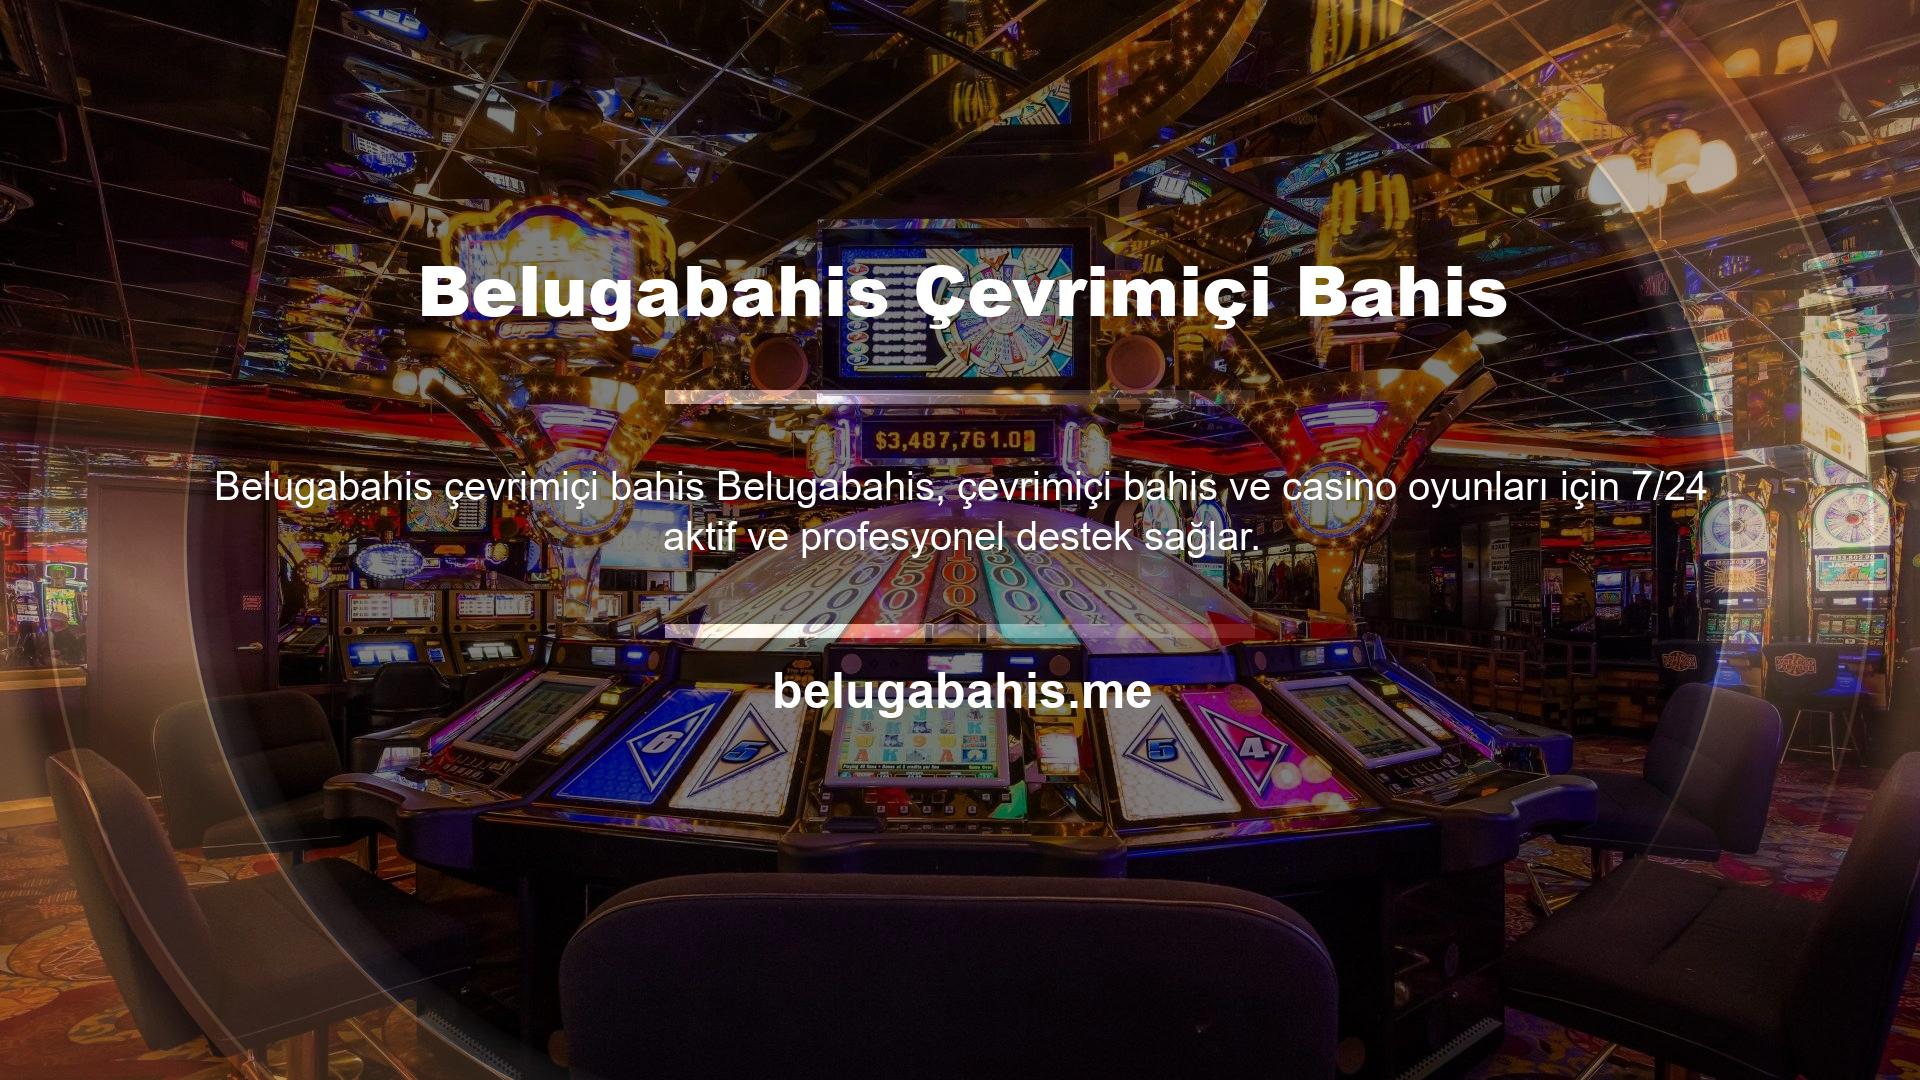 Belugabahis voleybol, basketbol, ​​canlı bahis, casino, sanal bahis, altın ve birçok saha dışı oyuna ev sahipliği yapmaktadır